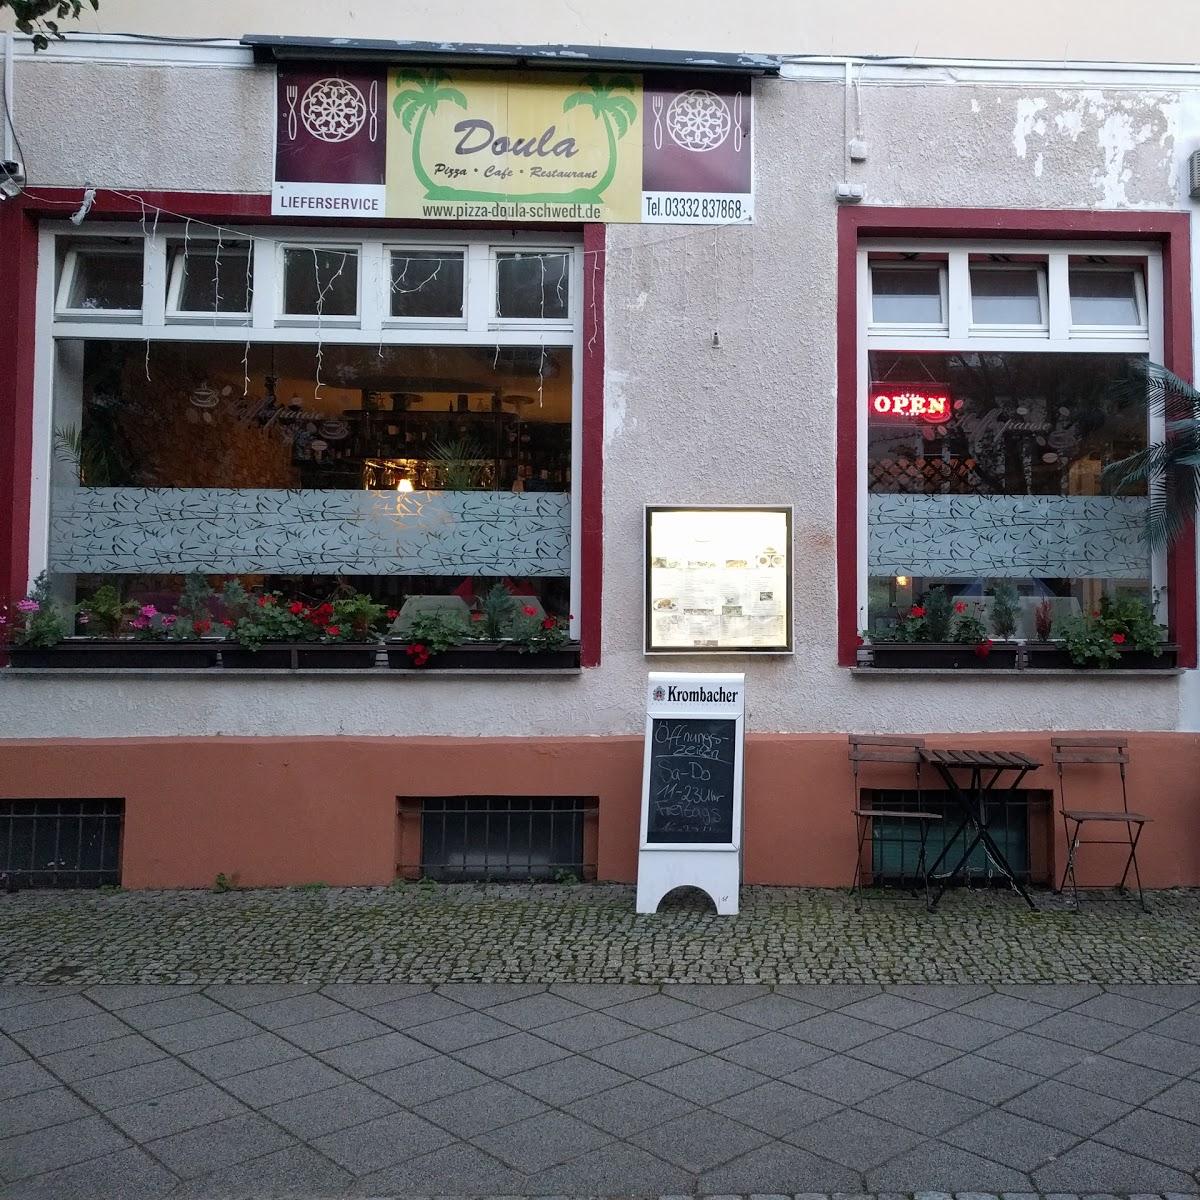 Restaurant "Doula" in Schwedt-Oder